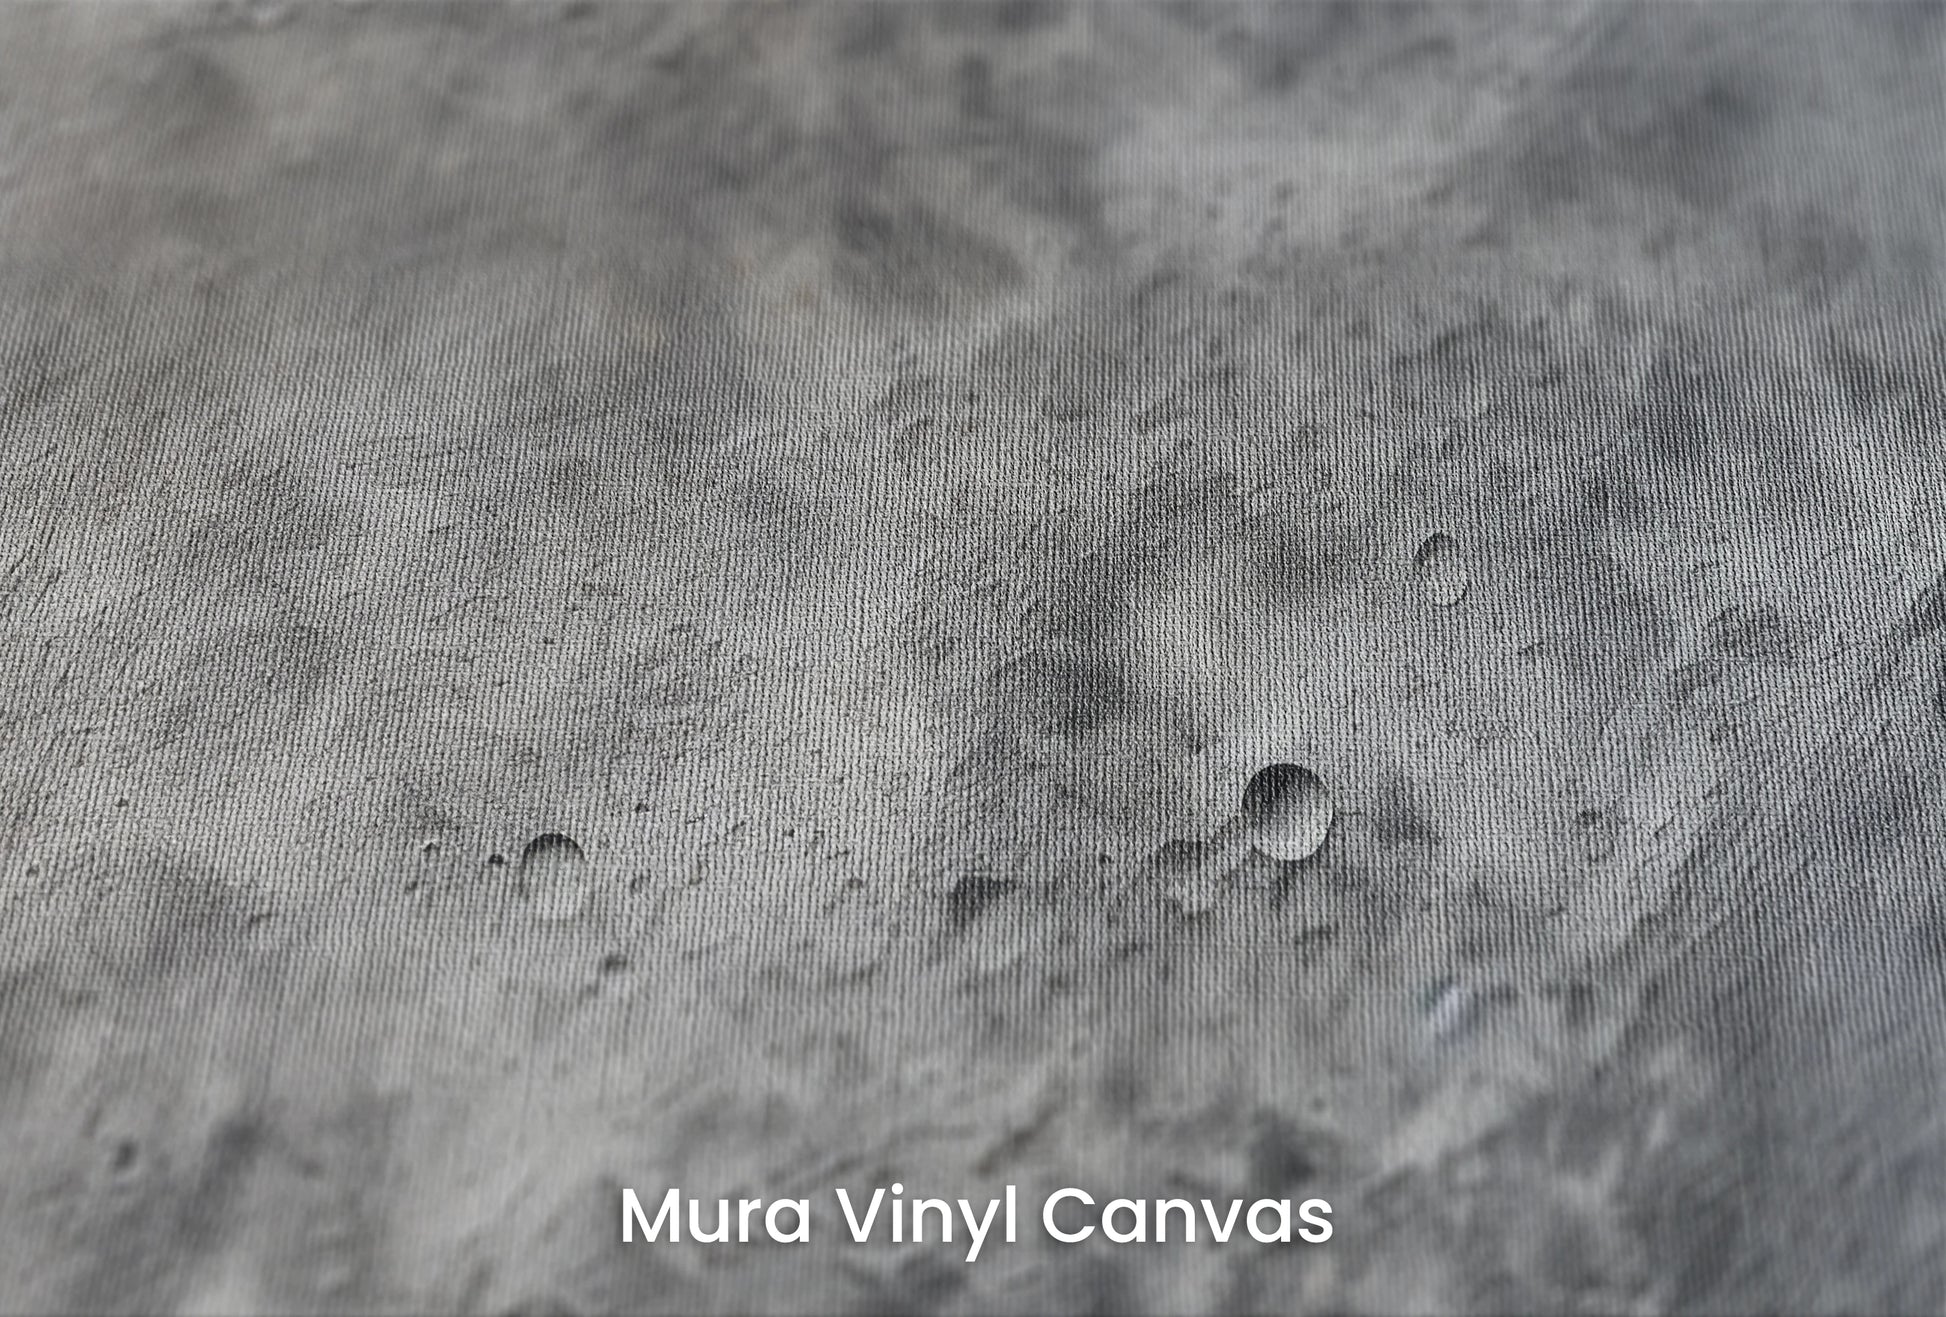 Zbliżenie na artystyczną fototapetę o nazwie Moon's Tranquility #2 na podłożu Mura Vinyl Canvas - faktura naturalnego płótna.